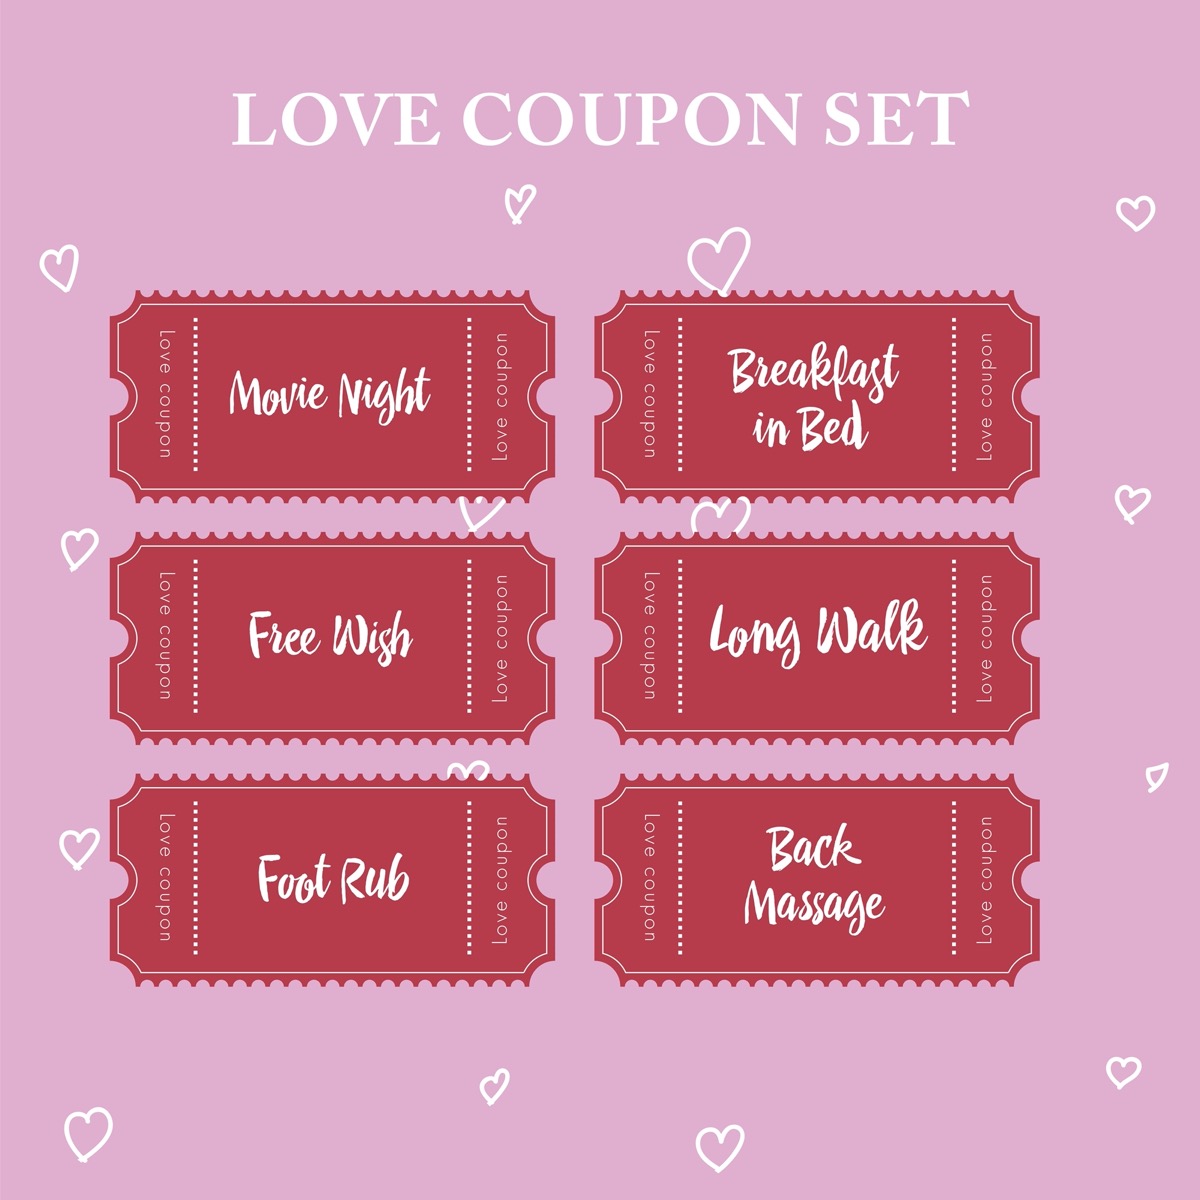 a love coupon set